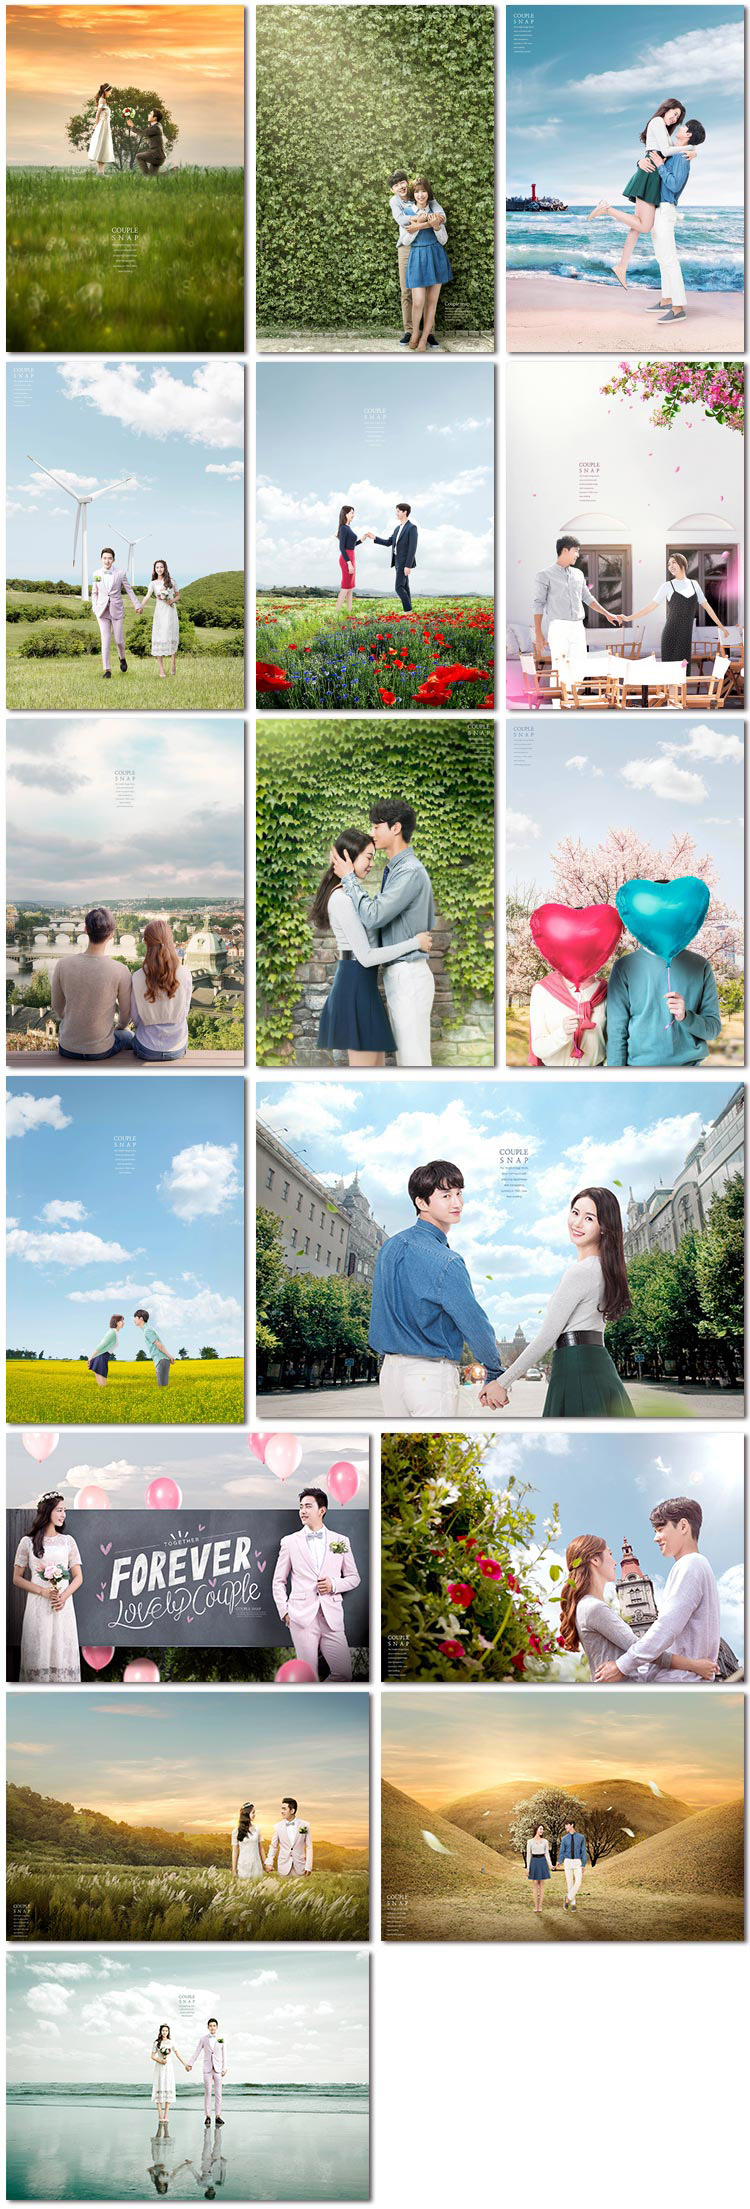 爱情情侣浪漫唯美场景摄影摄像婚礼照片影楼海报psd模板素材设计